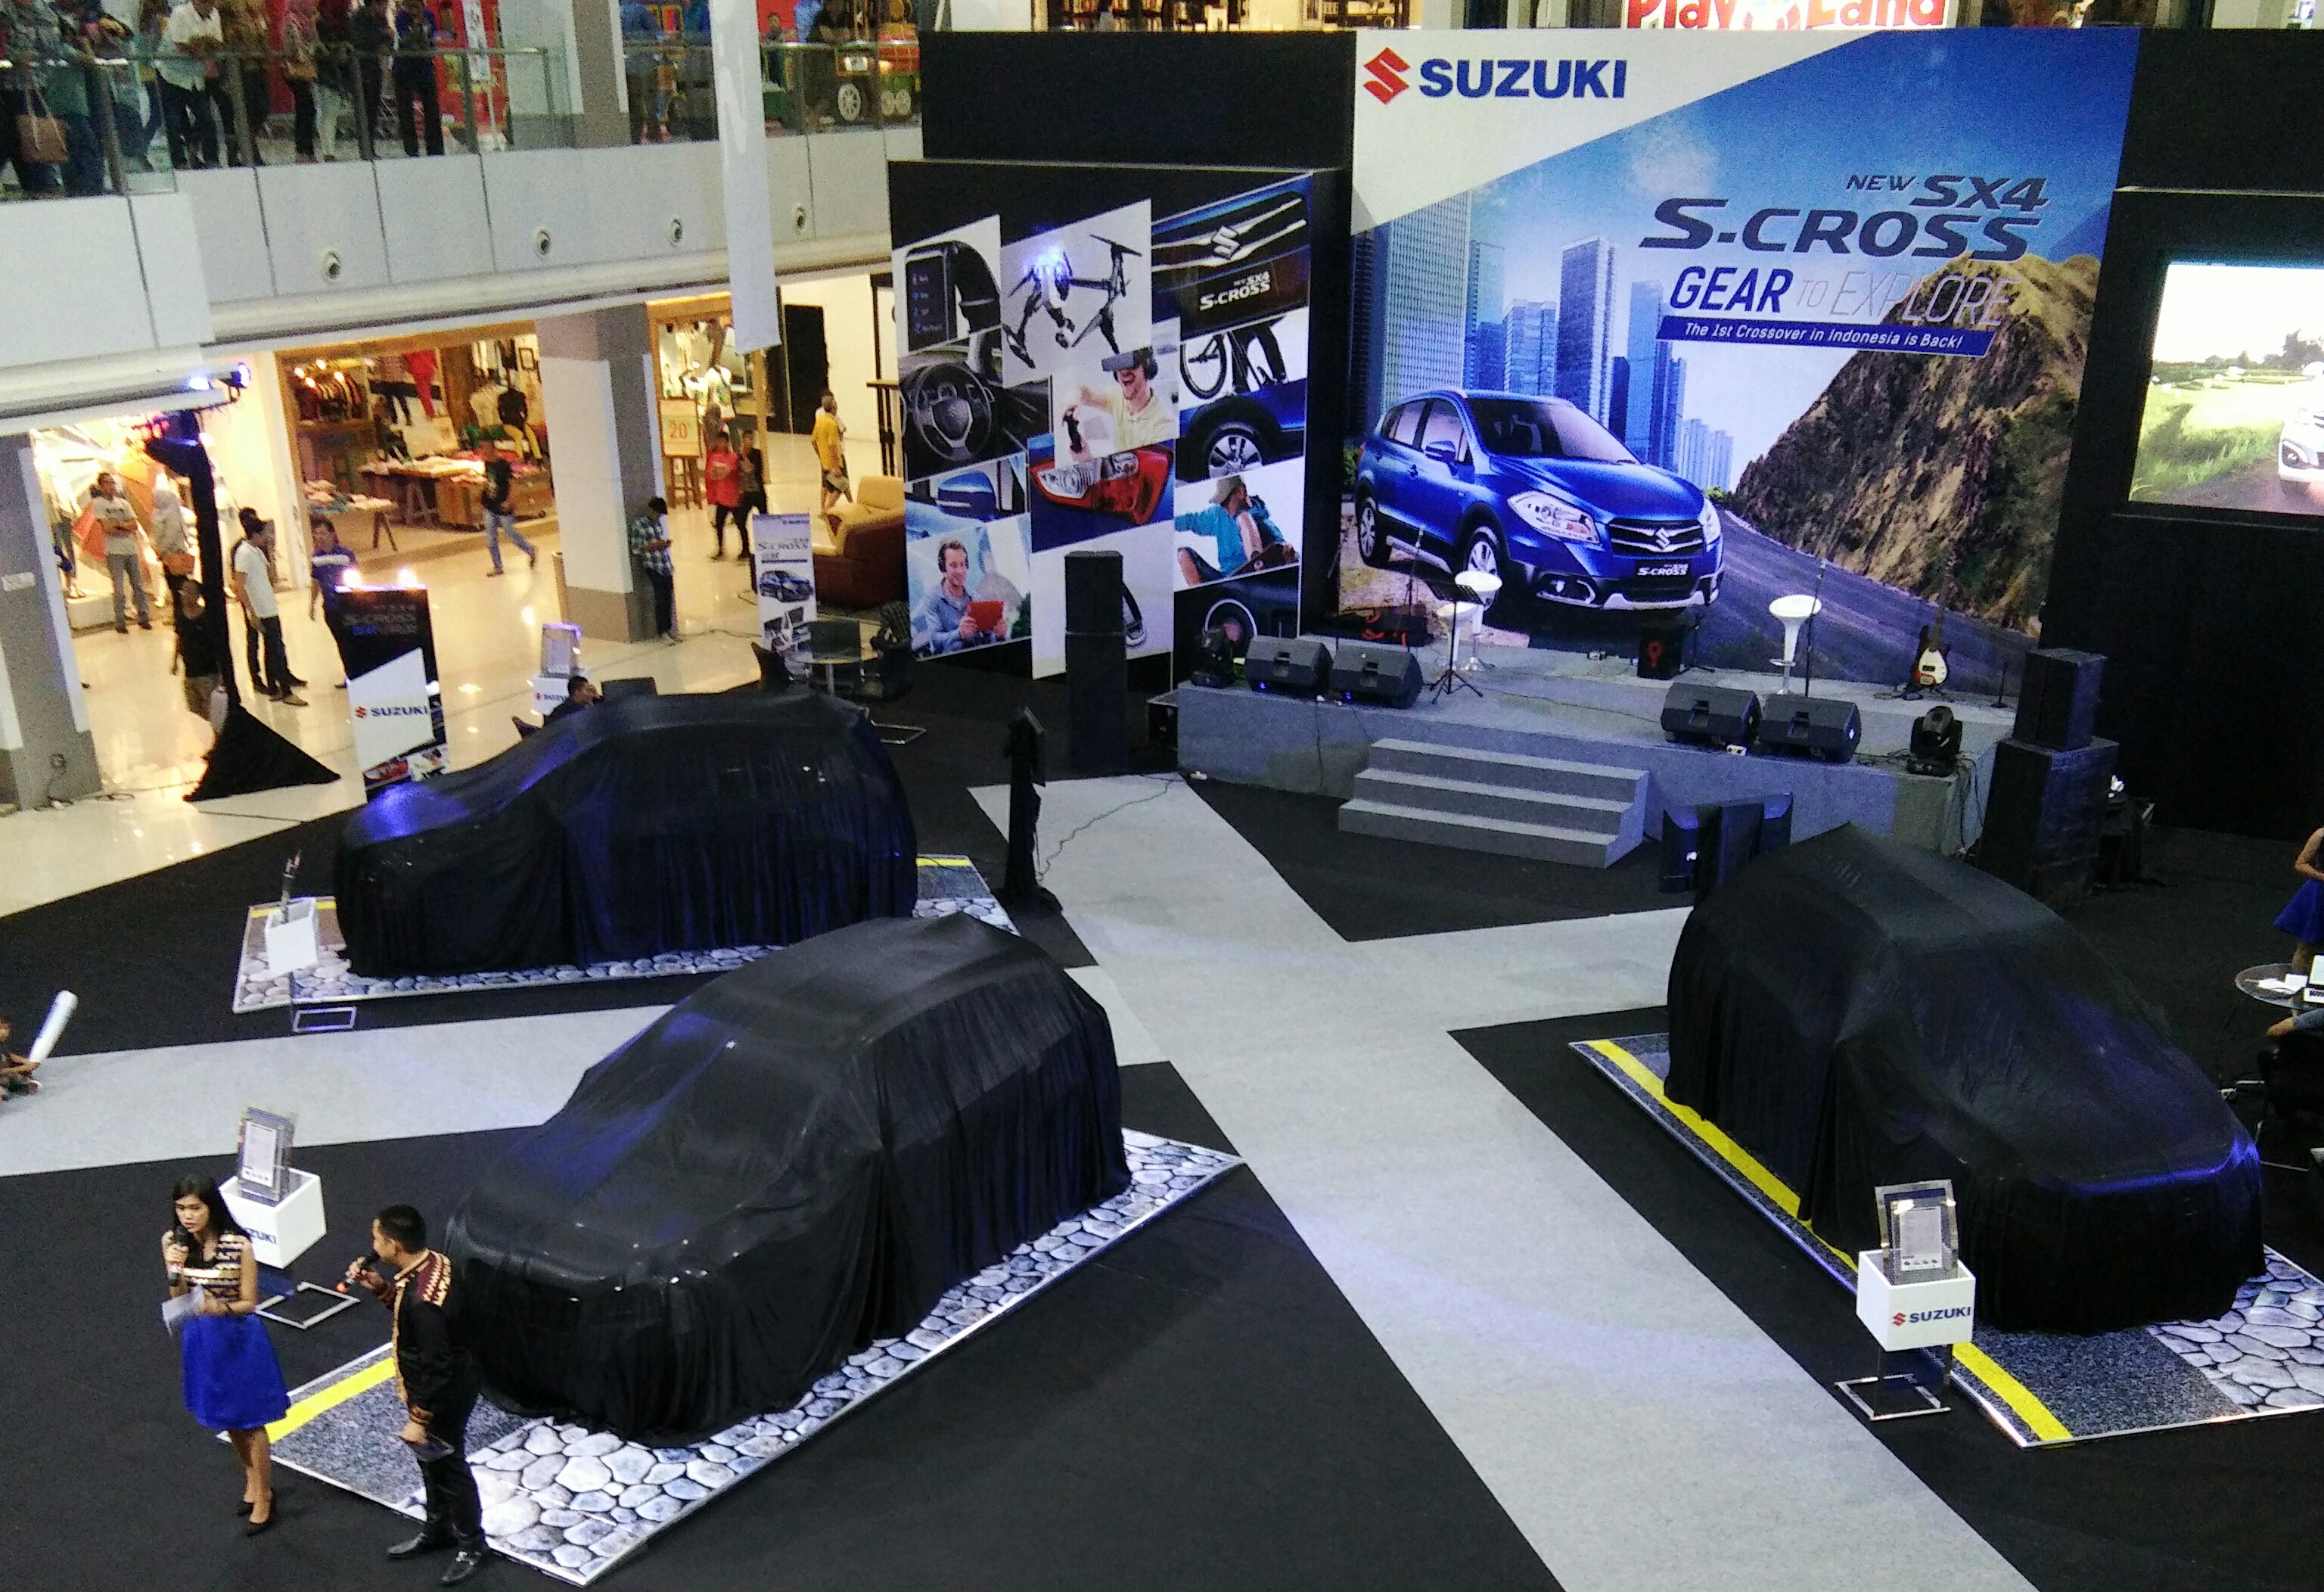 Yuk, Explore Lampung dengan Suzuki S-Cross